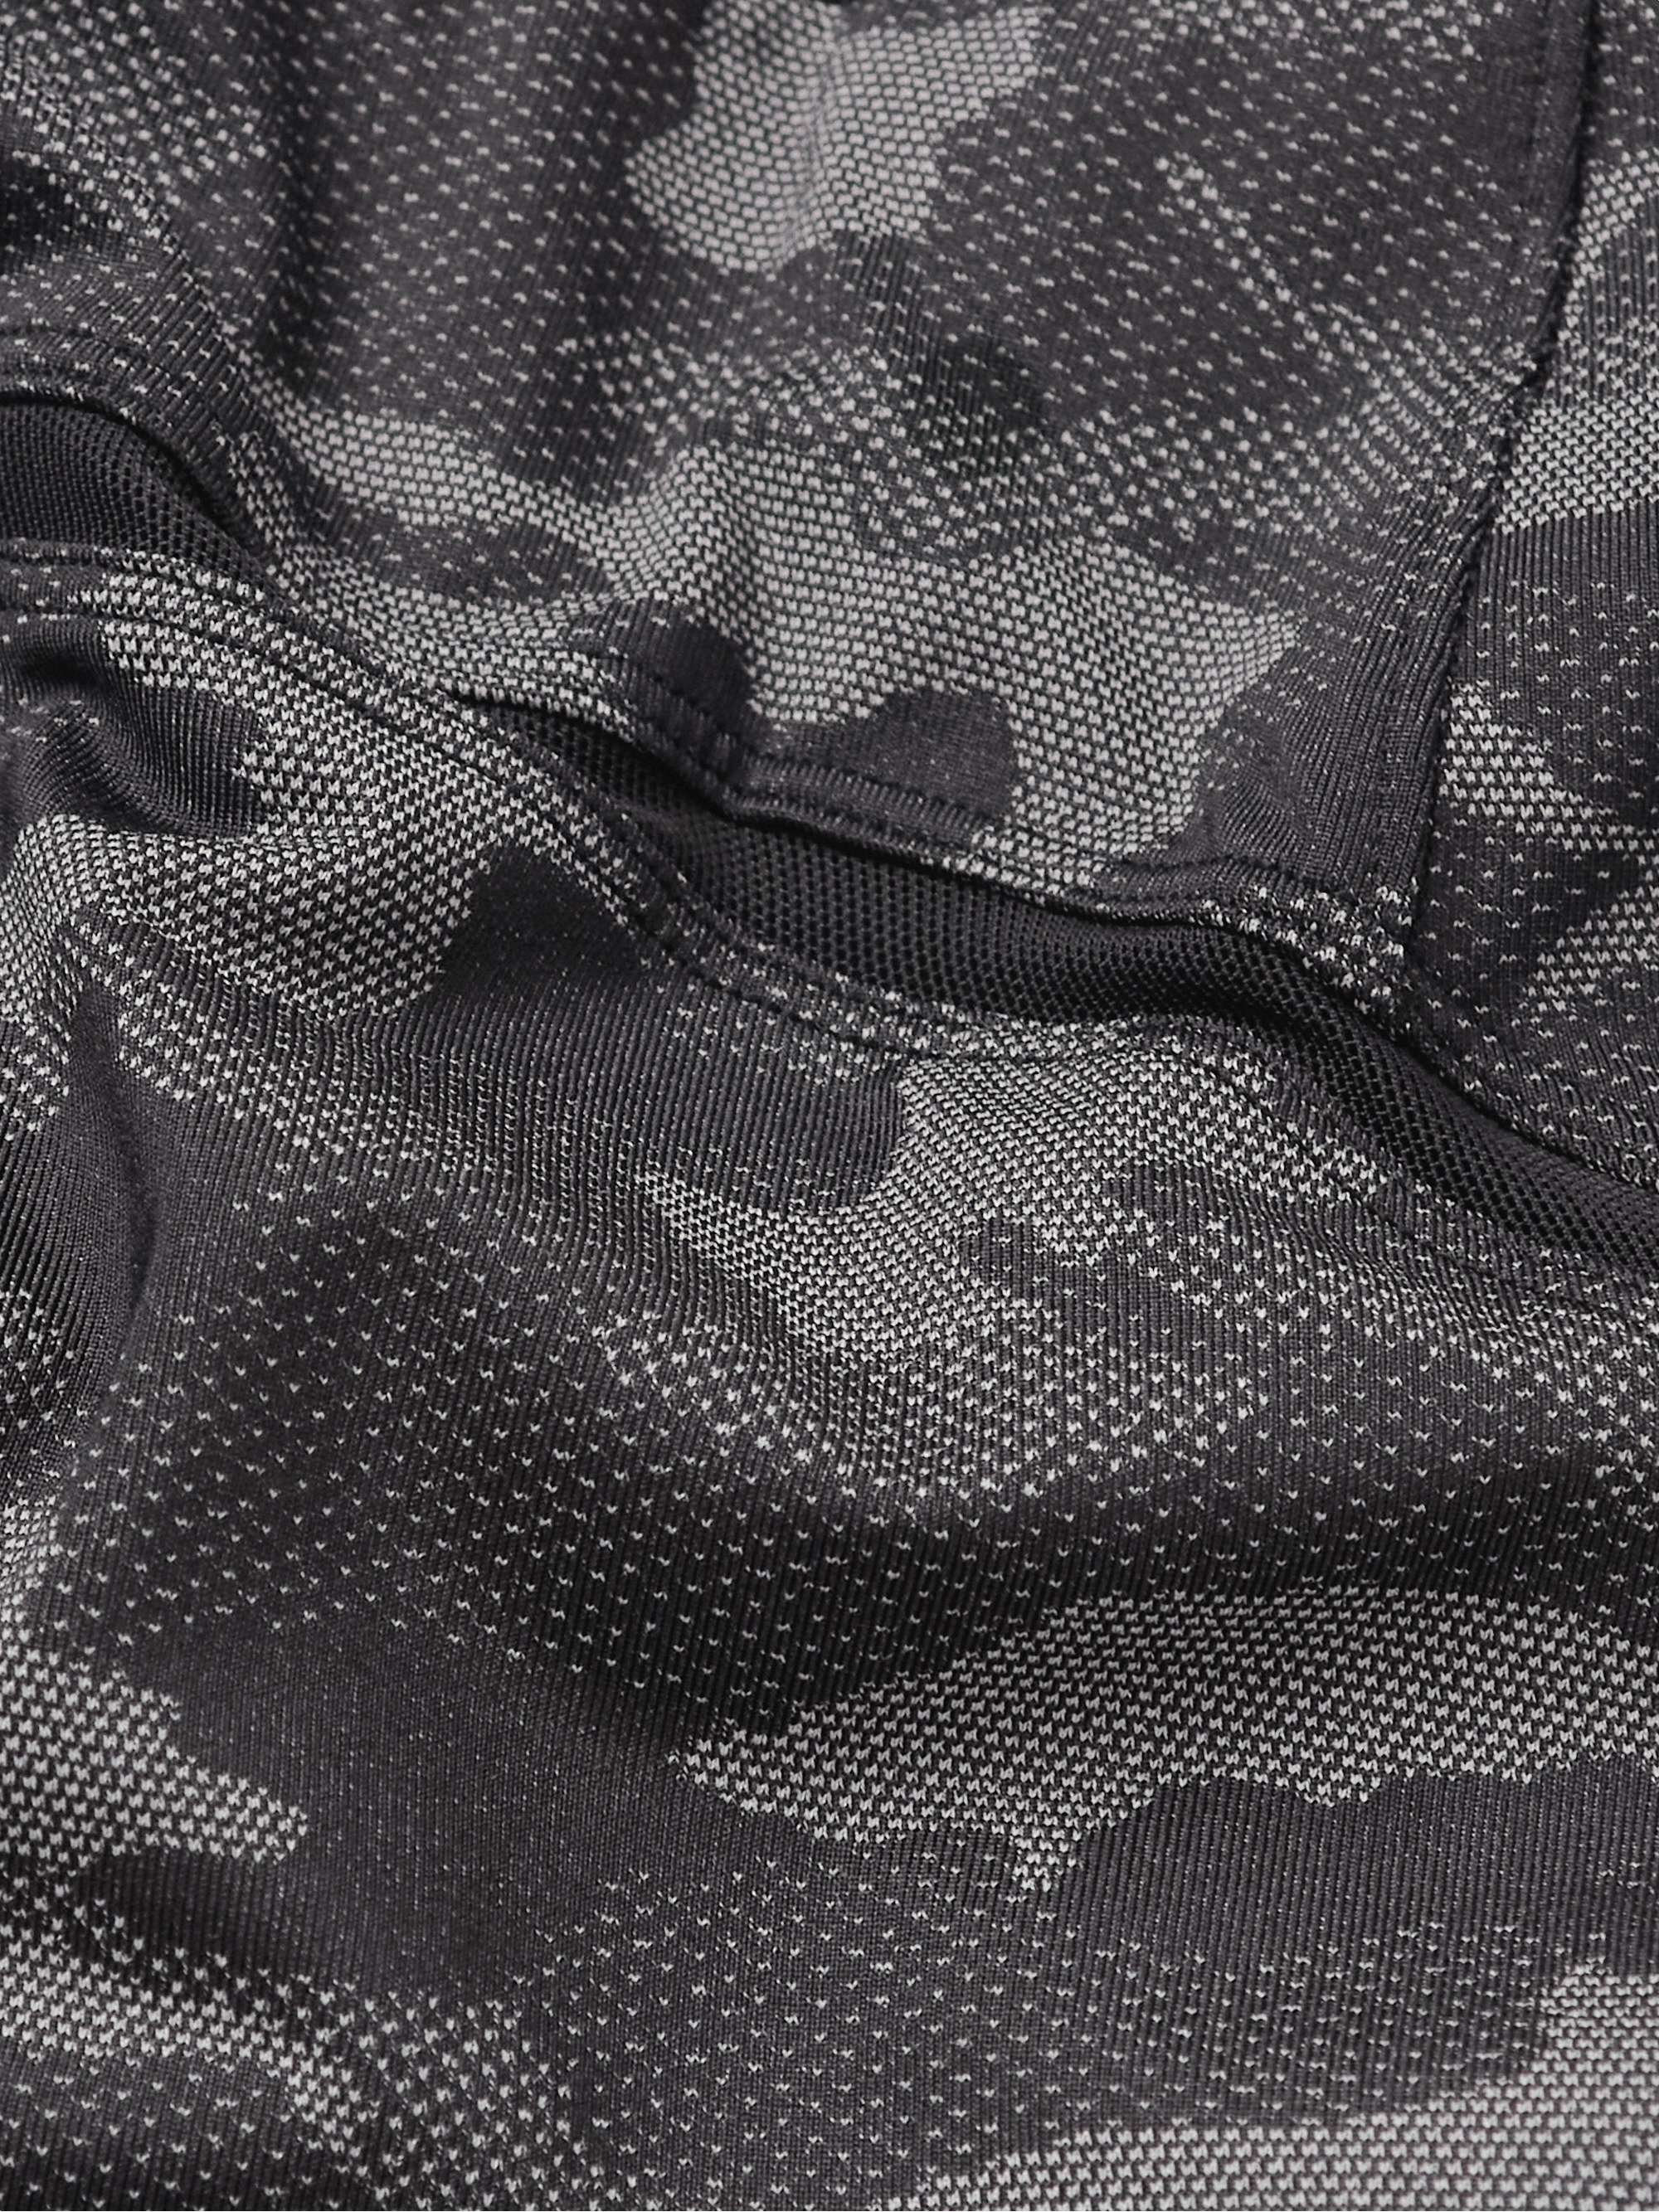 LULULEMON Pace Breaker 5" Camouflage-Jacquard Mesh Shorts